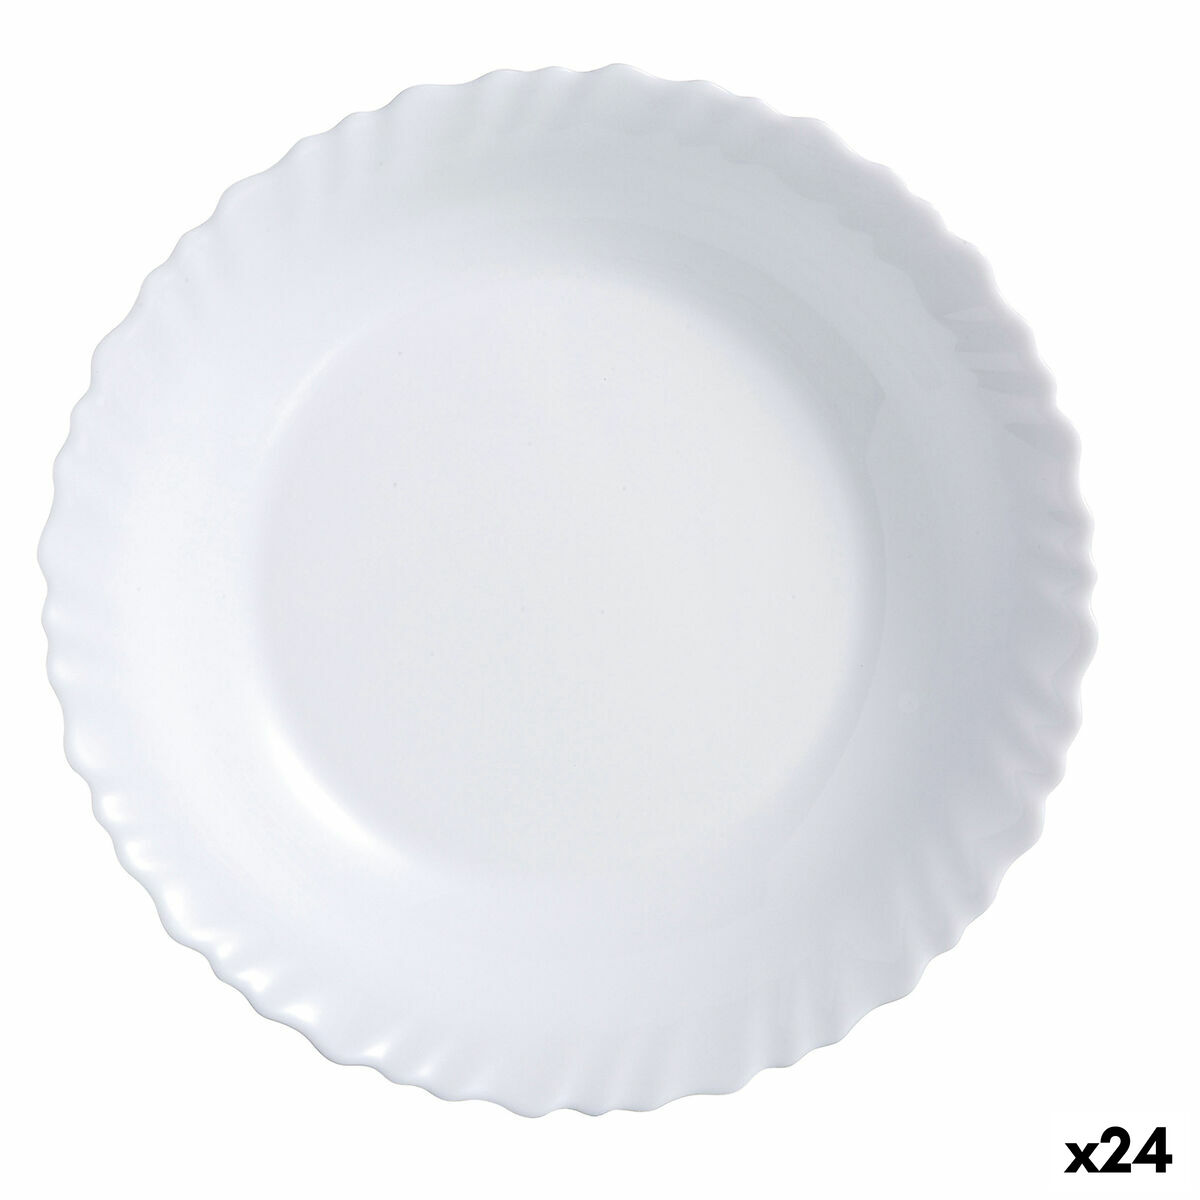 Piatto da pranzo Luminarc Feston Bianco Vetro 25 cm (24 Unità)